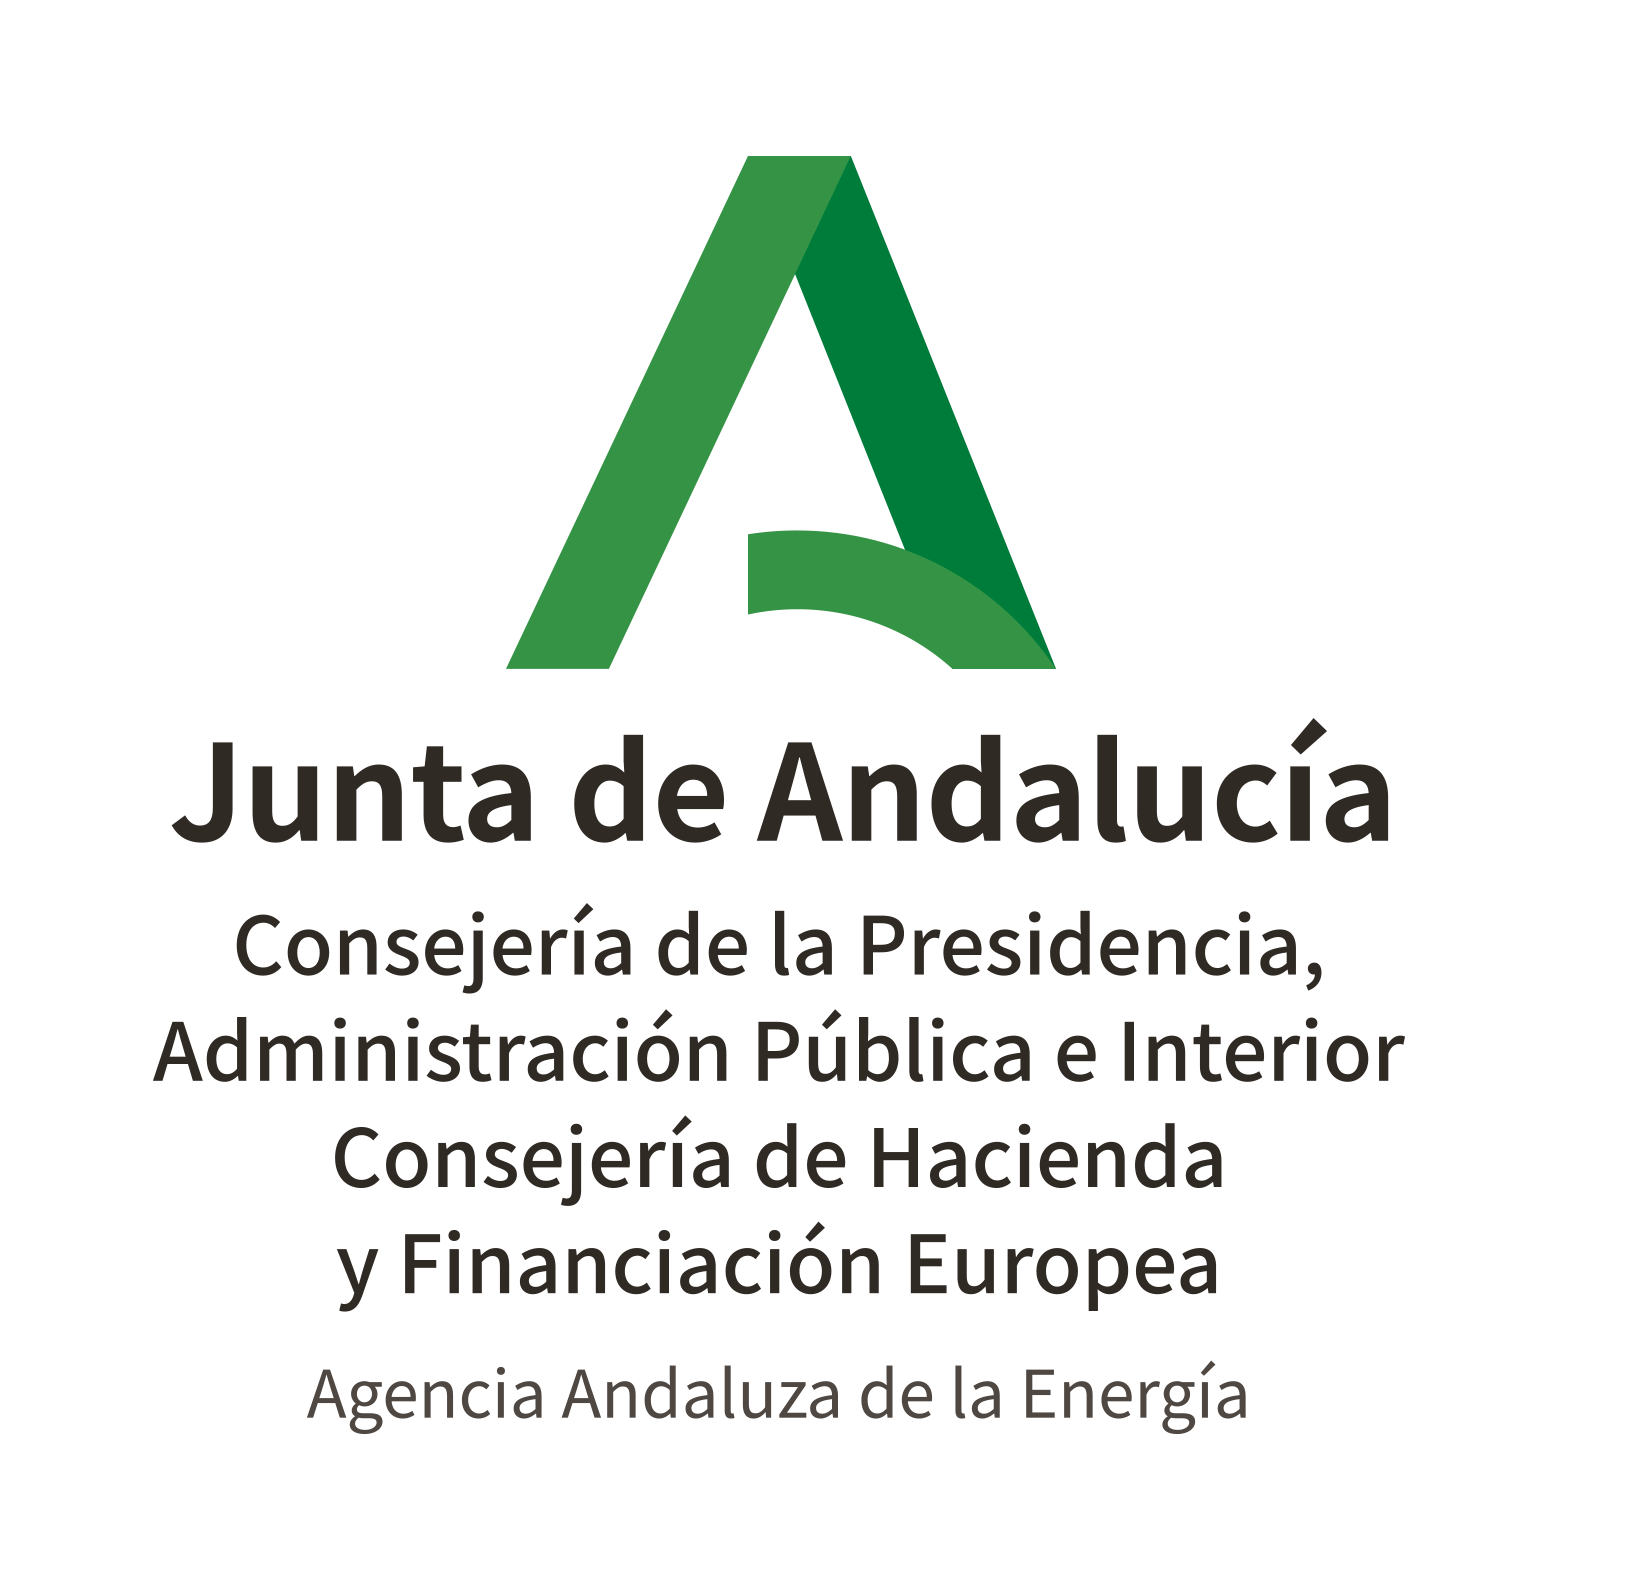 Andalusian Energy Agency – AEA